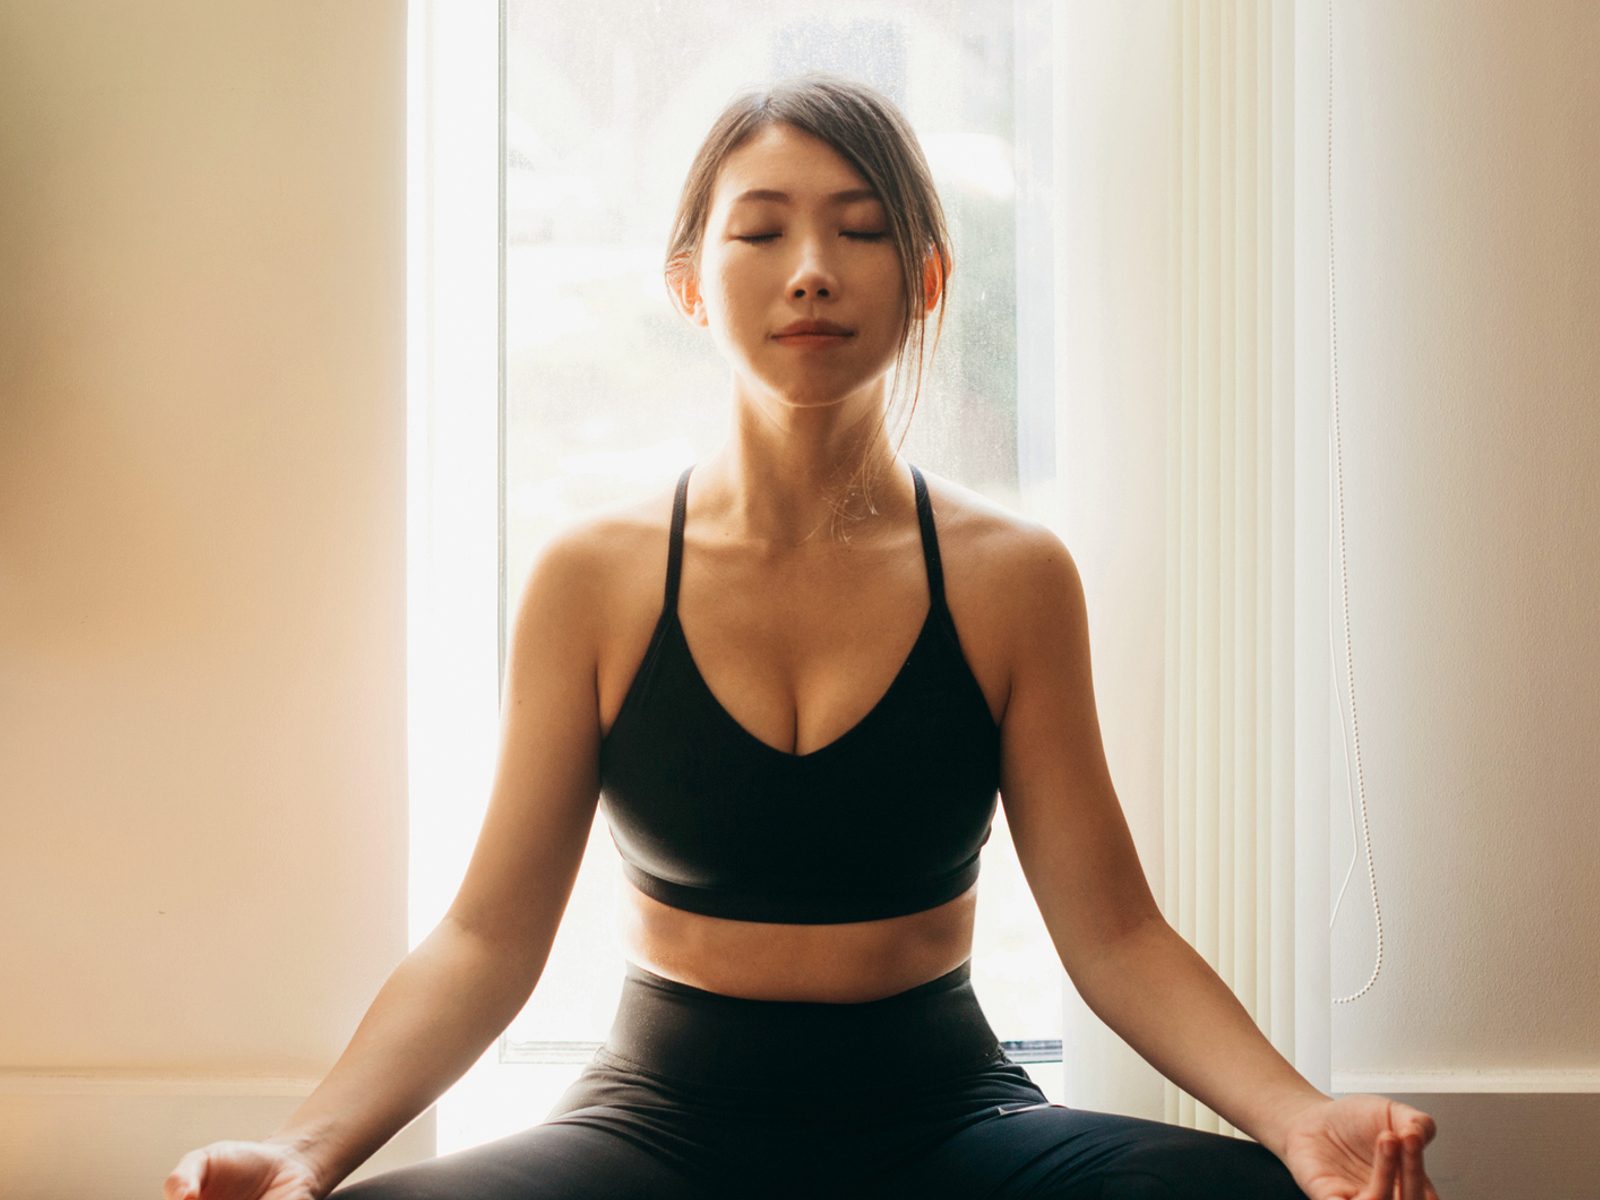 10 minute Yoga for Beginners | Beginner Yoga for Flexibility - YouTube